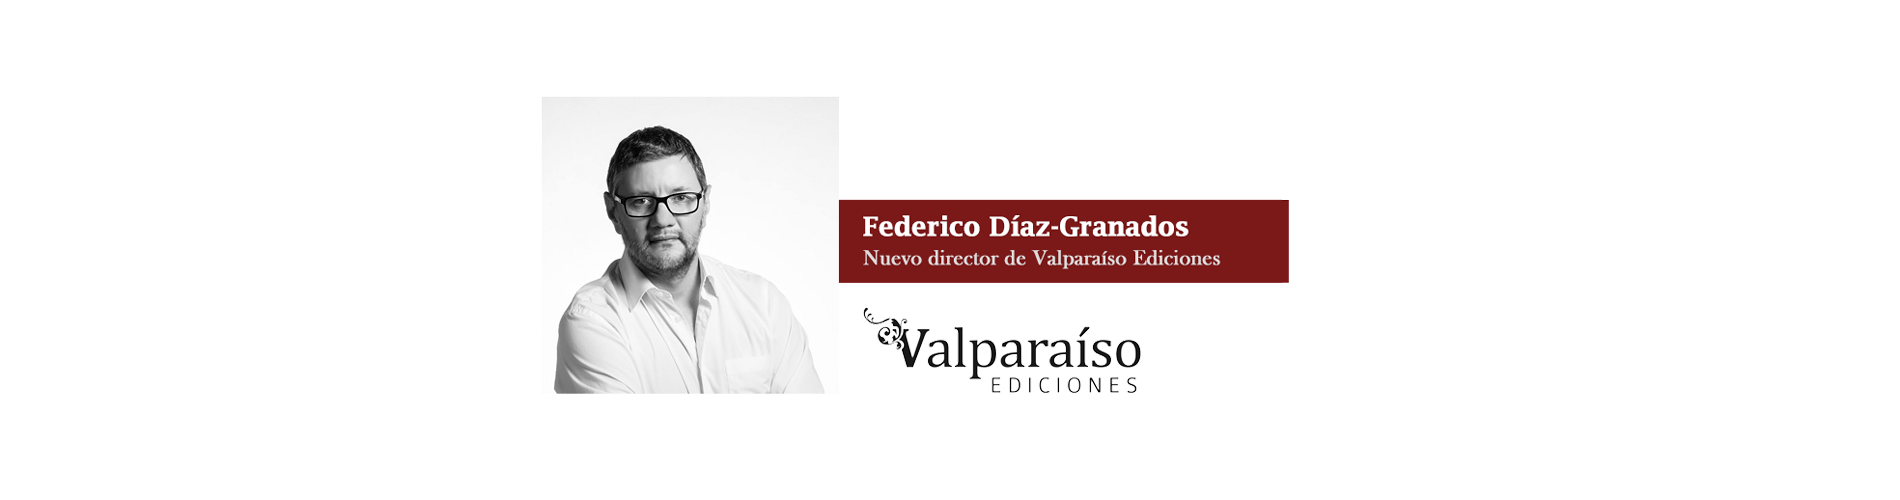 Federico Díaz-Granados, nuevo director de Valparaíso Ediciones